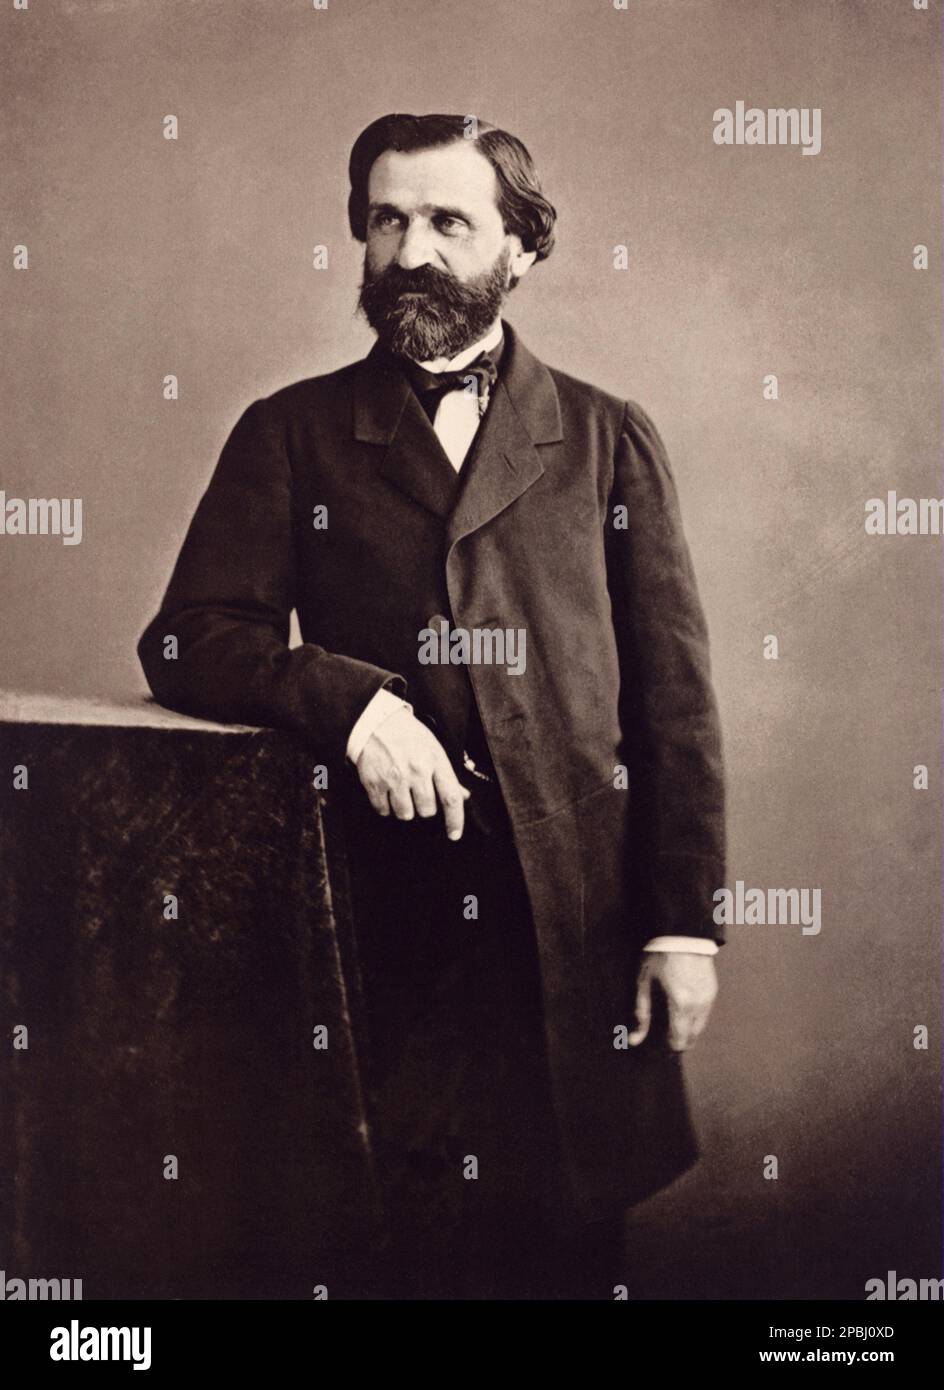 1860 ca , Parigi , francia : il celebre compositore italiano GIUSEPPE VERDI ( 1813 - 1901 ). PHOTO BY NADAR - COMPOSITORE - OPERA LIRICA - CLASSICA - CLASSICA - RITRATTO - RITRATTO - MUSICALE - MUSICA - BARBA - BARBA - FIOCCO - FIOCCO - CRAVATTA - CRAVATTA - CRAVATTA --- ARCHIVIO GBB Foto Stock